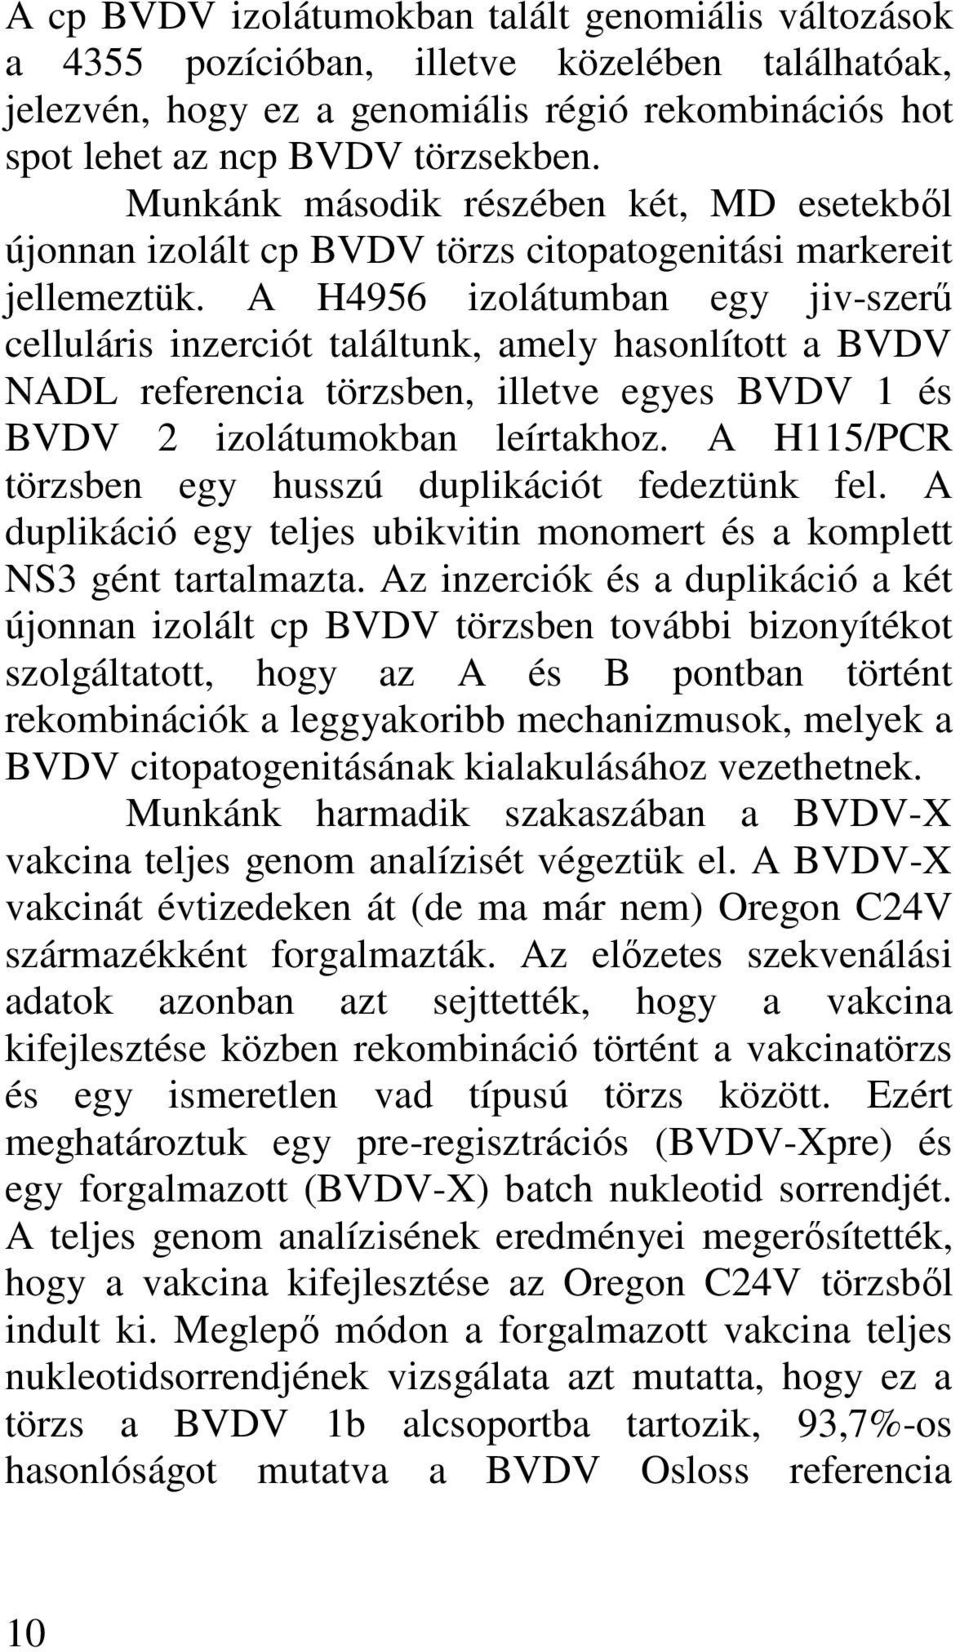 A H4956 izolátumban egy jiv-szerő celluláris inzerciót találtunk, amely hasonlított a BVDV NADL referencia törzsben, illetve egyes BVDV 1 és BVDV 2 izolátumokban leírtakhoz.